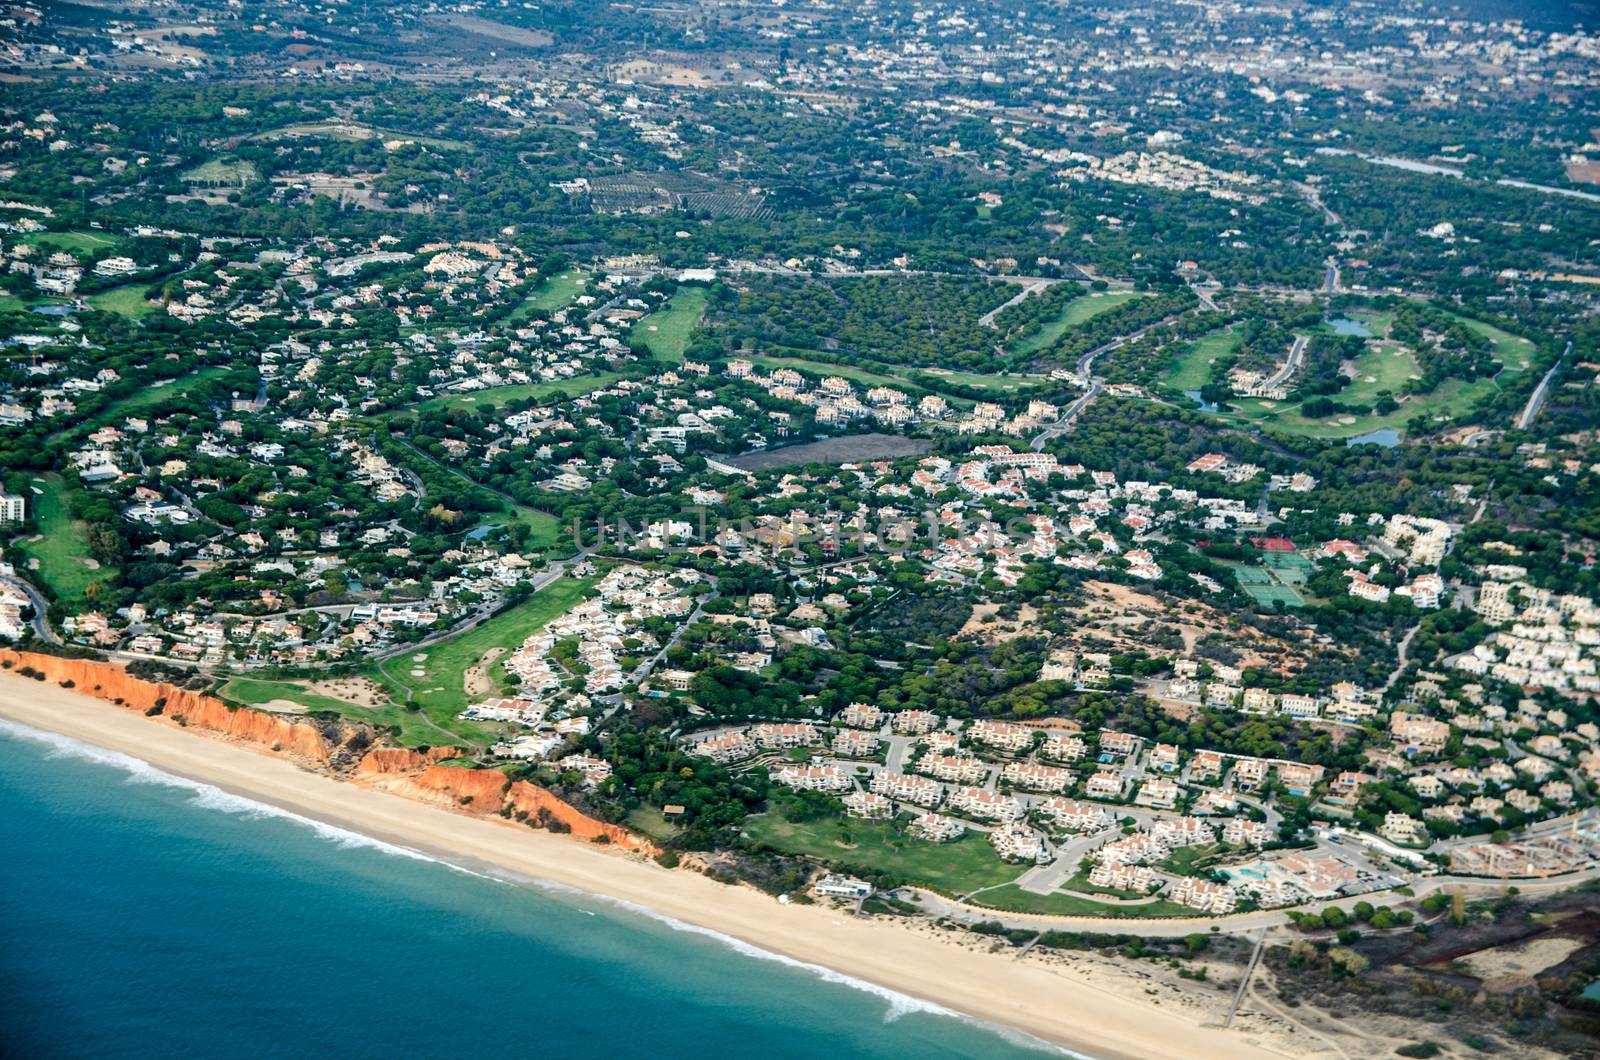 Aerial view of tourist resorts on the Algarve coast of Portugal with Praia de Vale Do Lobo, Quarteira and Praia do Garrao Poente visible.